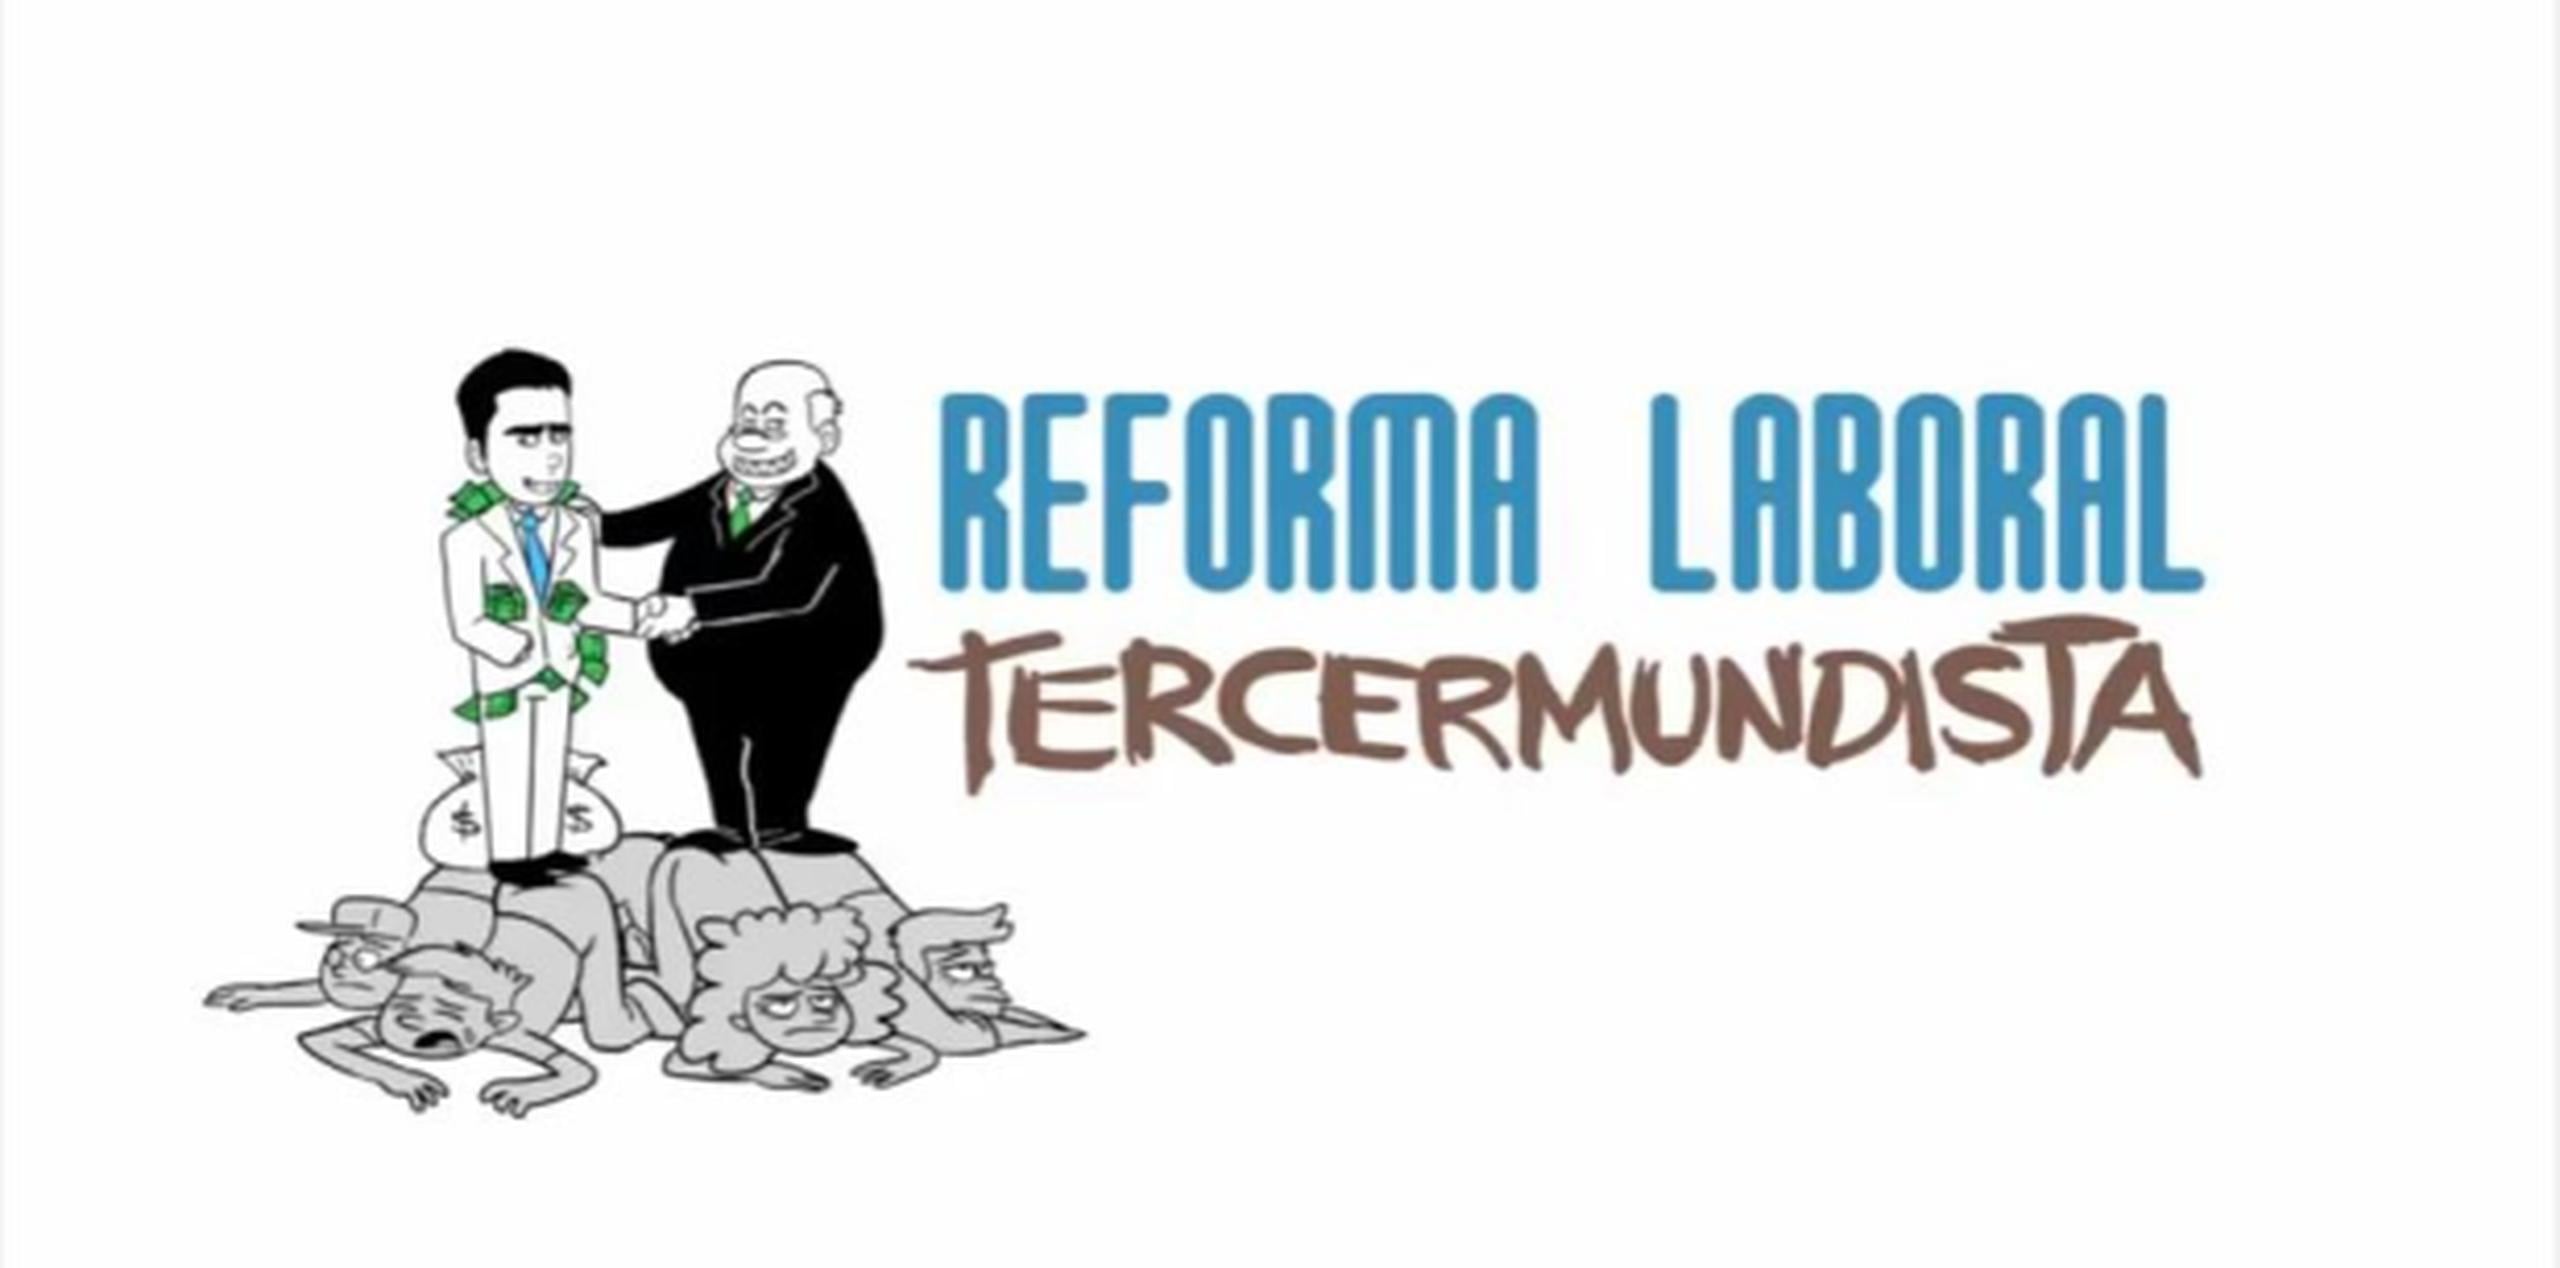 Así explica la sátira política "De La Nada" la reforma laboral. (Captura/YouTube)